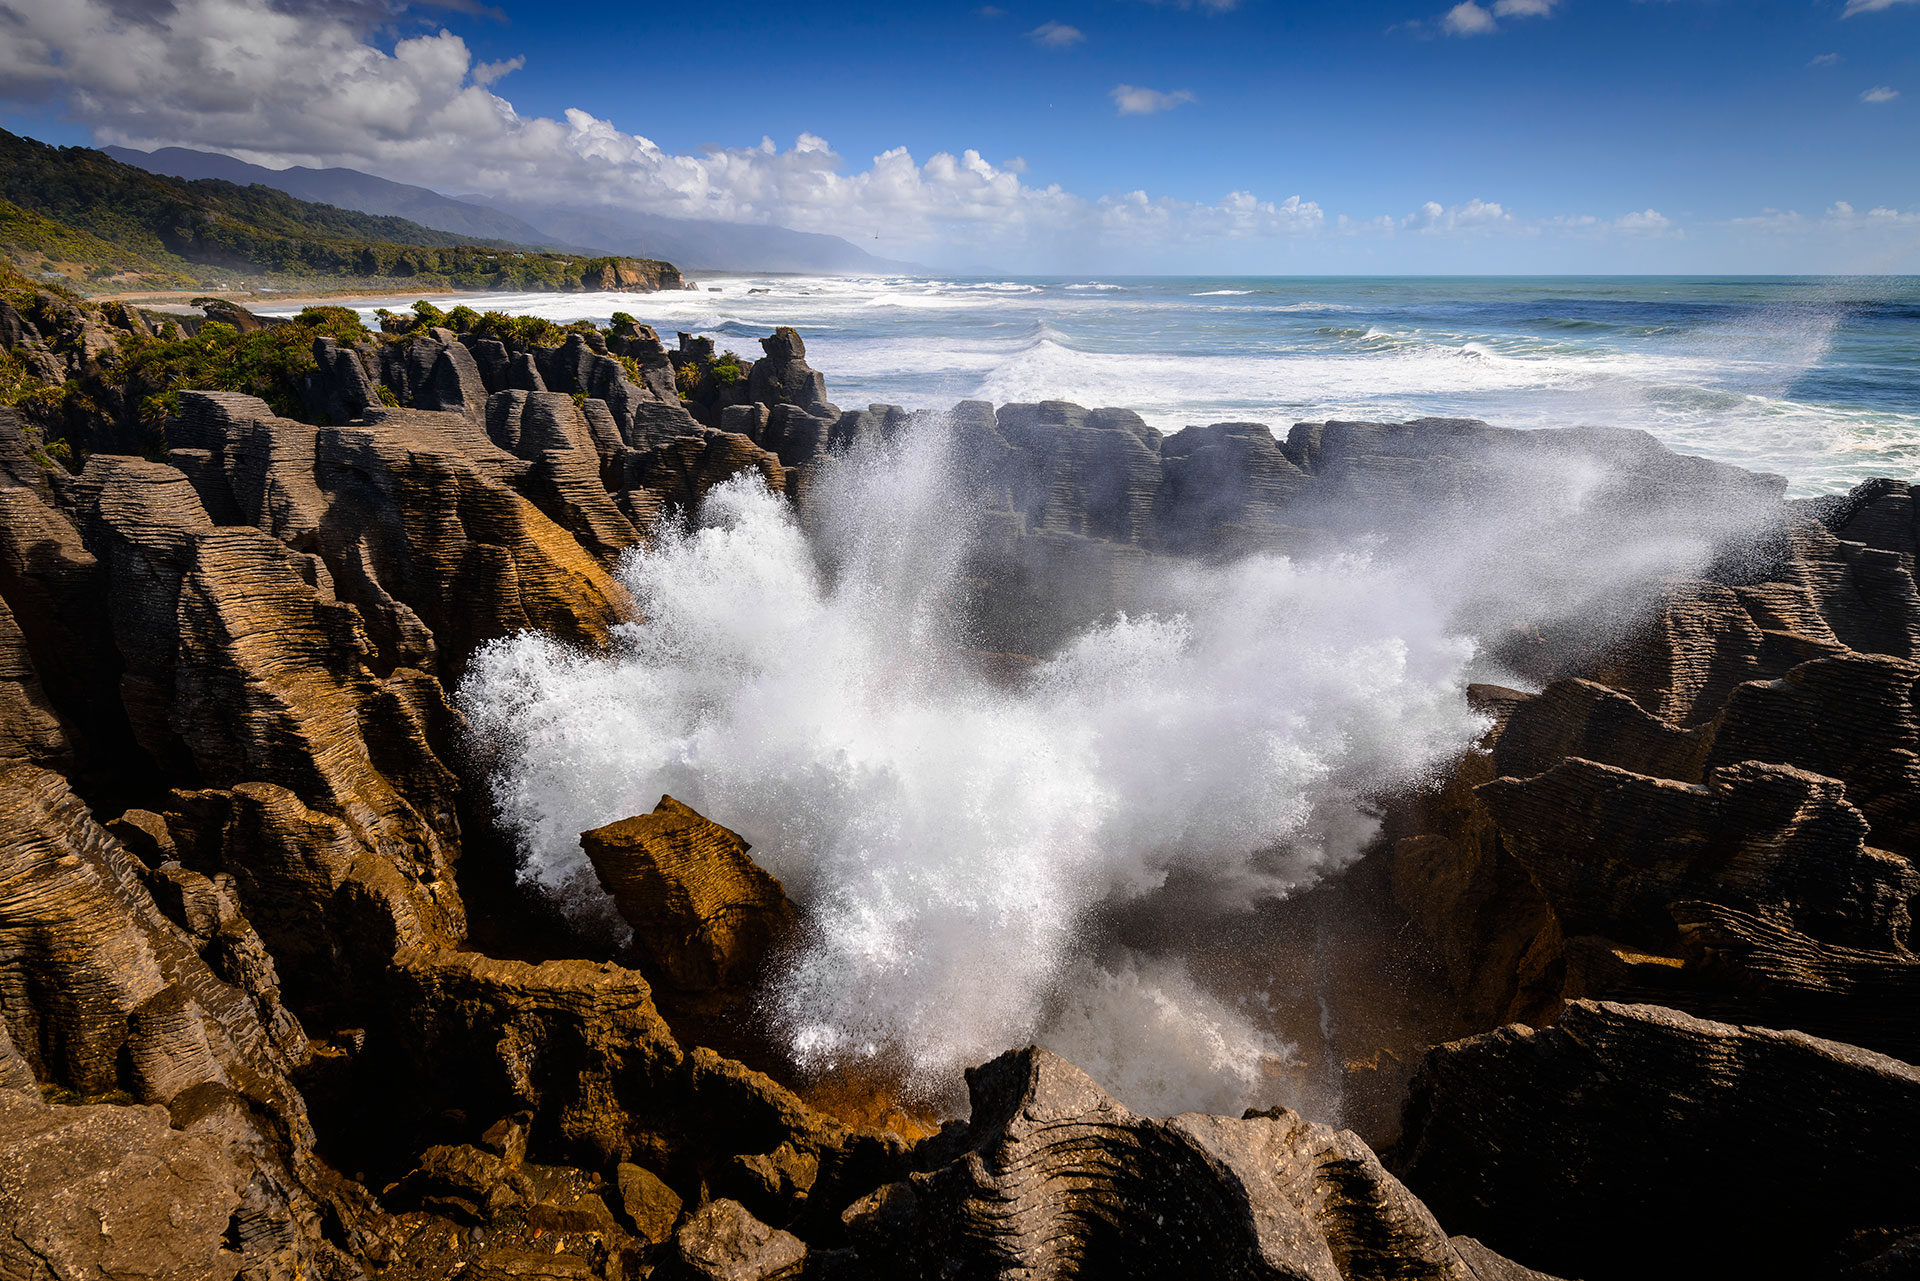 In Neuseeland auf der Südinsel findet man die Blowhole an der Felsformation der Pancake Rocks